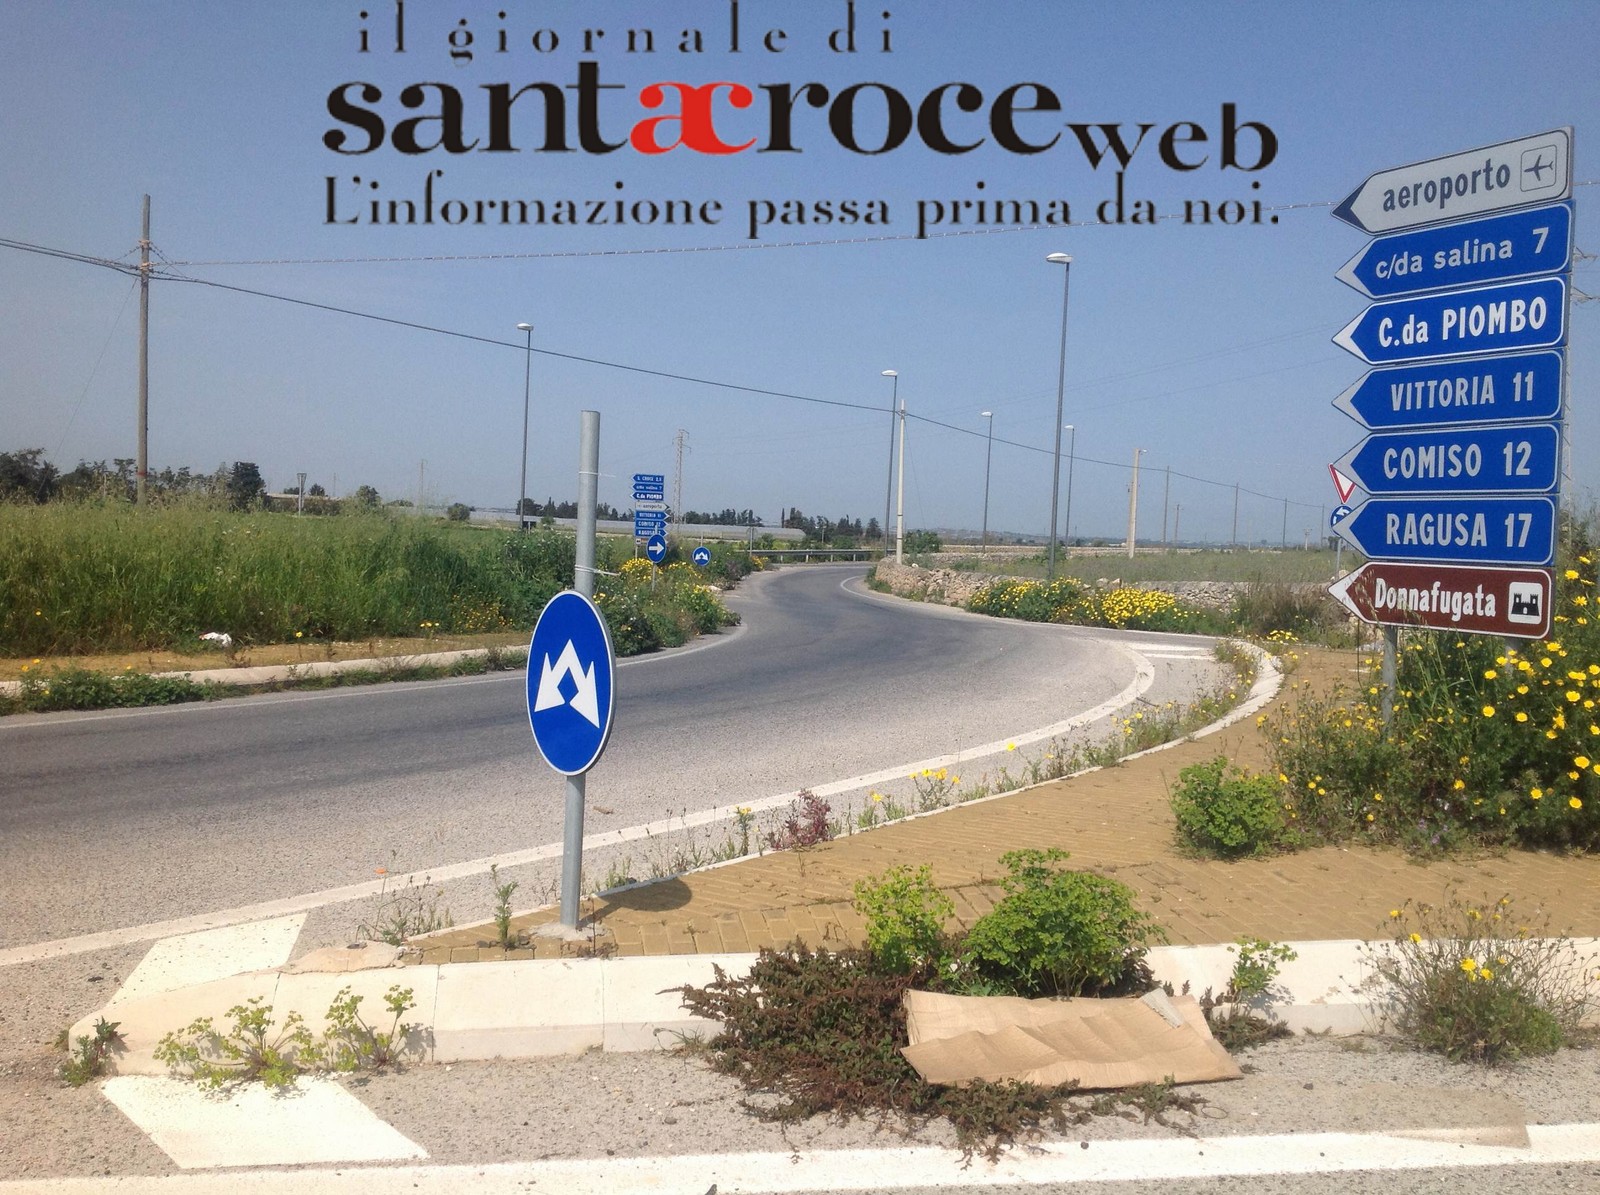  Vegetazione alta due metri nelle rotatorie della Sp S.Croce-Comiso: allarme degli automobilisti FOTO